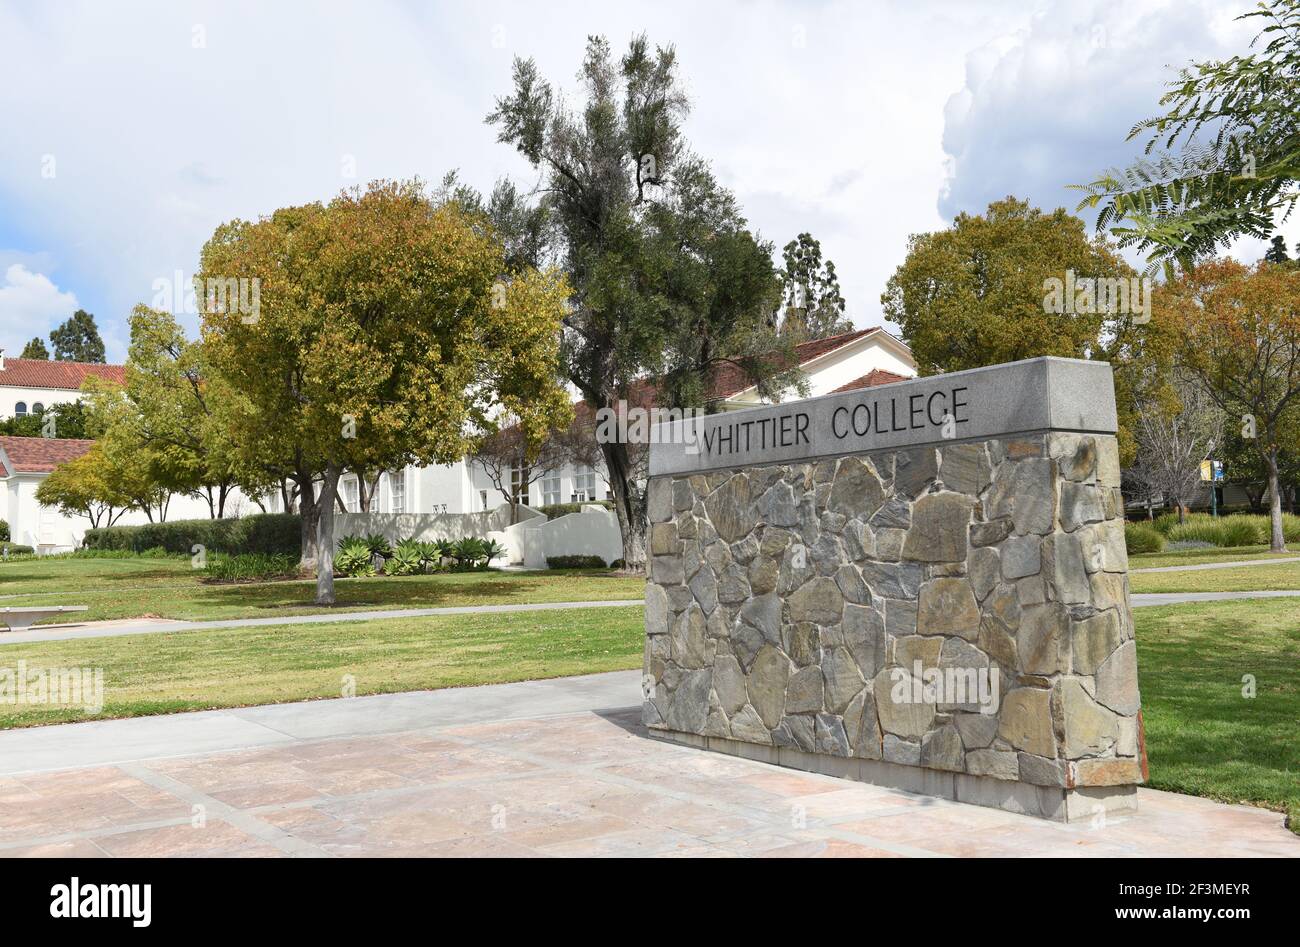 WHITTIER, CALIFORNIA 12 MAR 2021: Whittier College firma en el Lower Quad en el Campus de la Escuela de Artes Liberales. Foto de stock